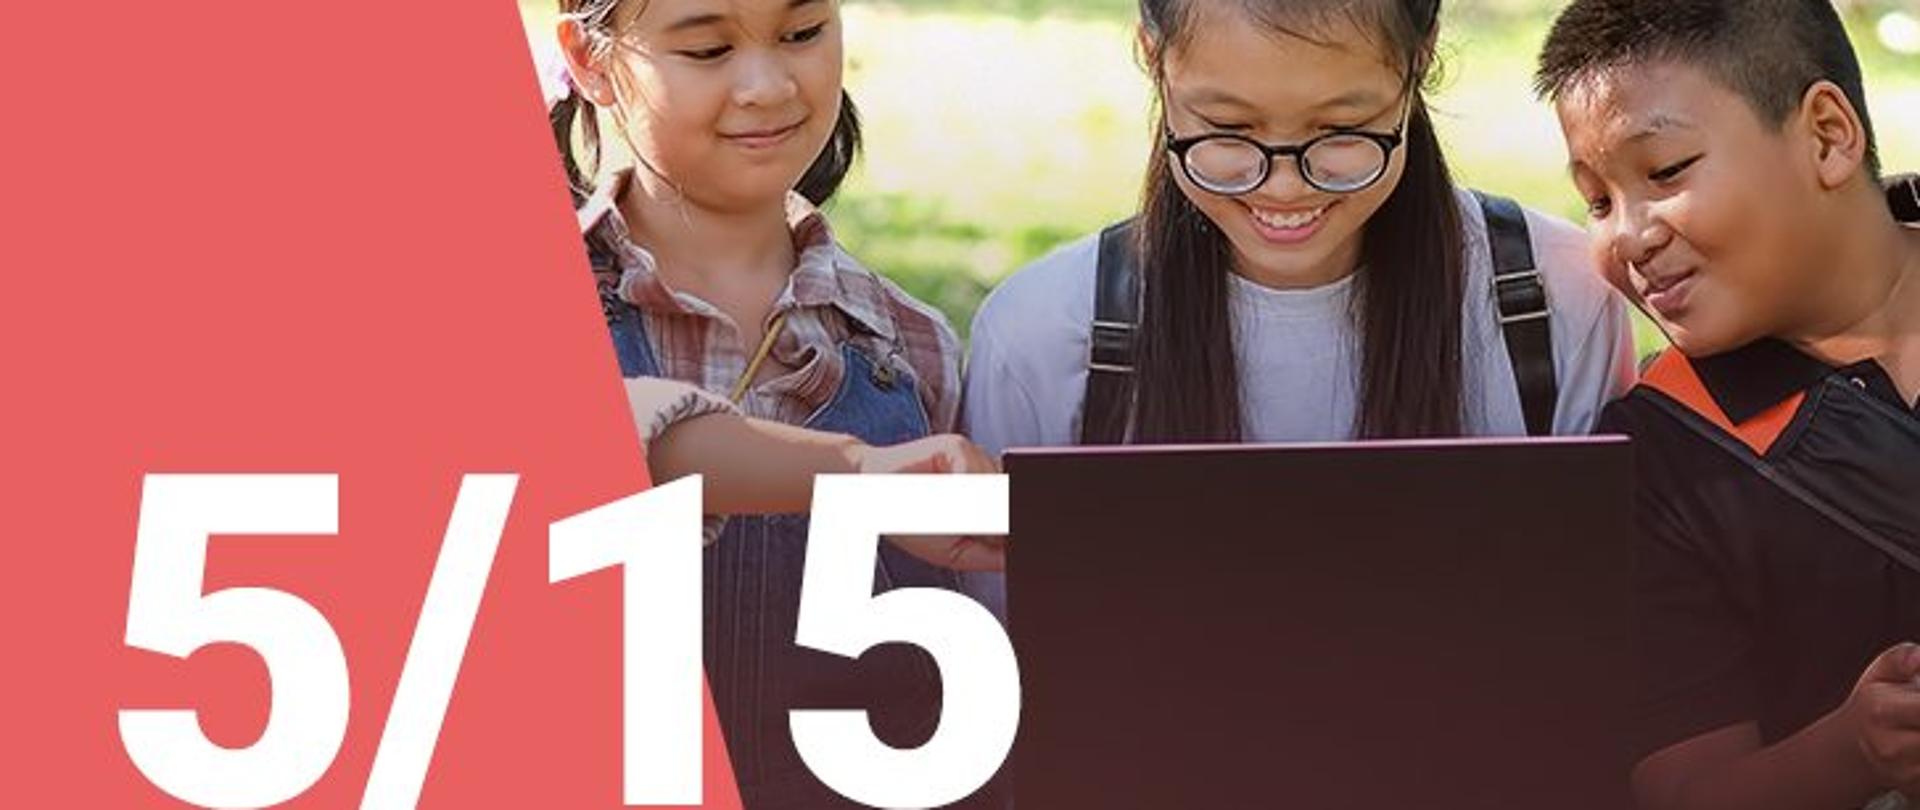 Na zdjęciu widzimy dwie dziewczynki oraz chłopca patrzących z uśmiechem na ekran laptopa. W dolnym lewym roku widoczna jest numeracja zdjęcia (5/15) 